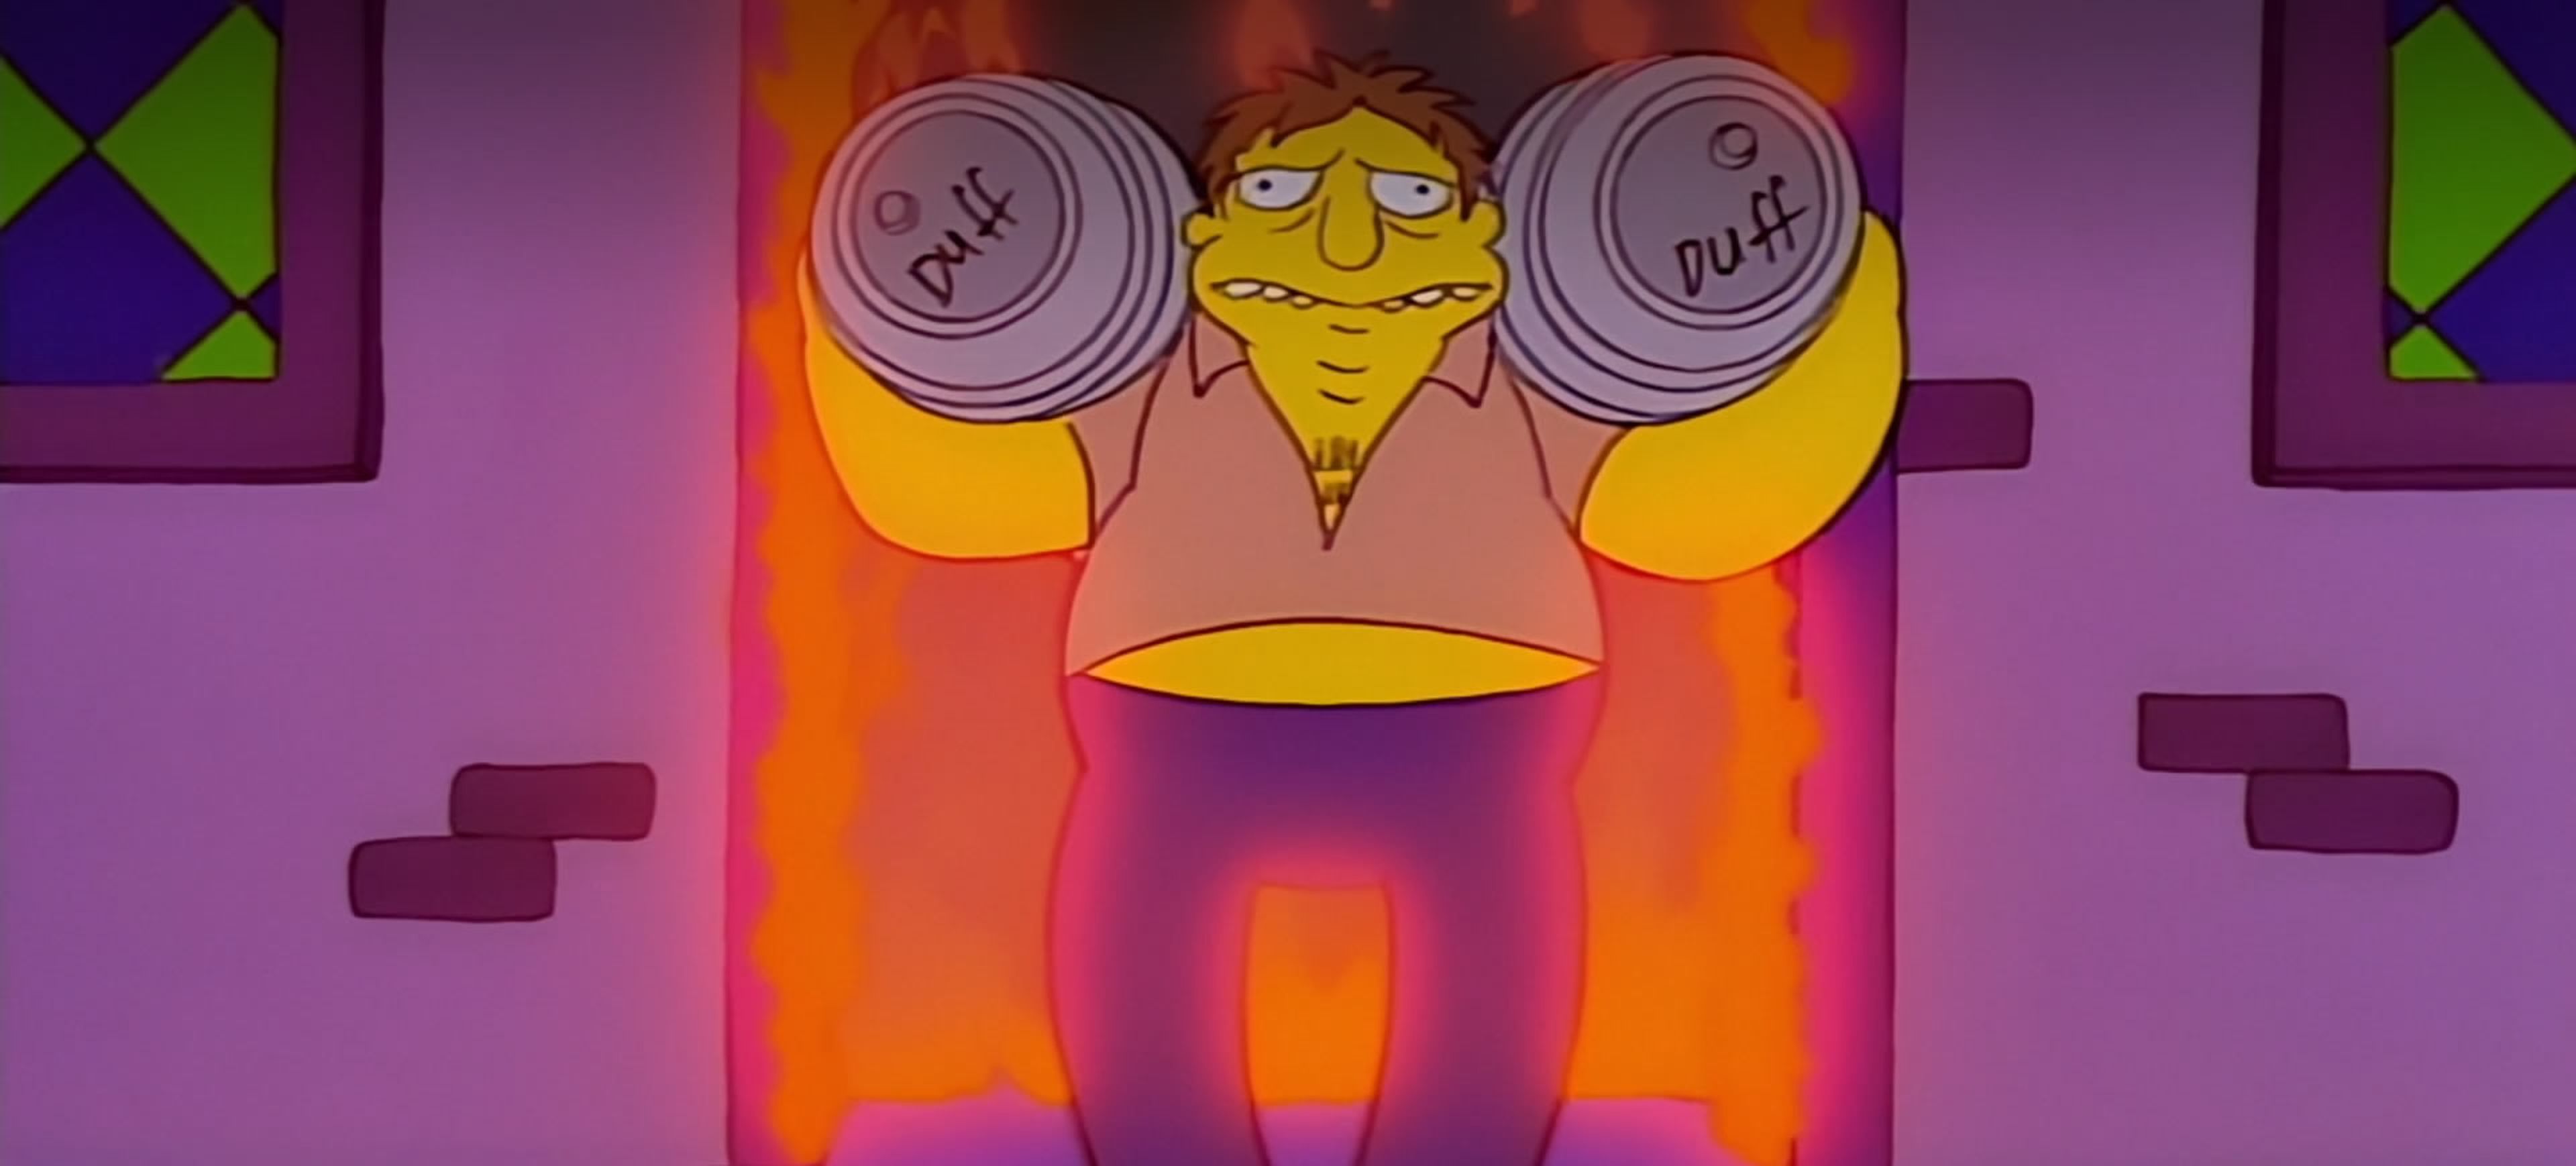 Los Simpson - Barney Gamble